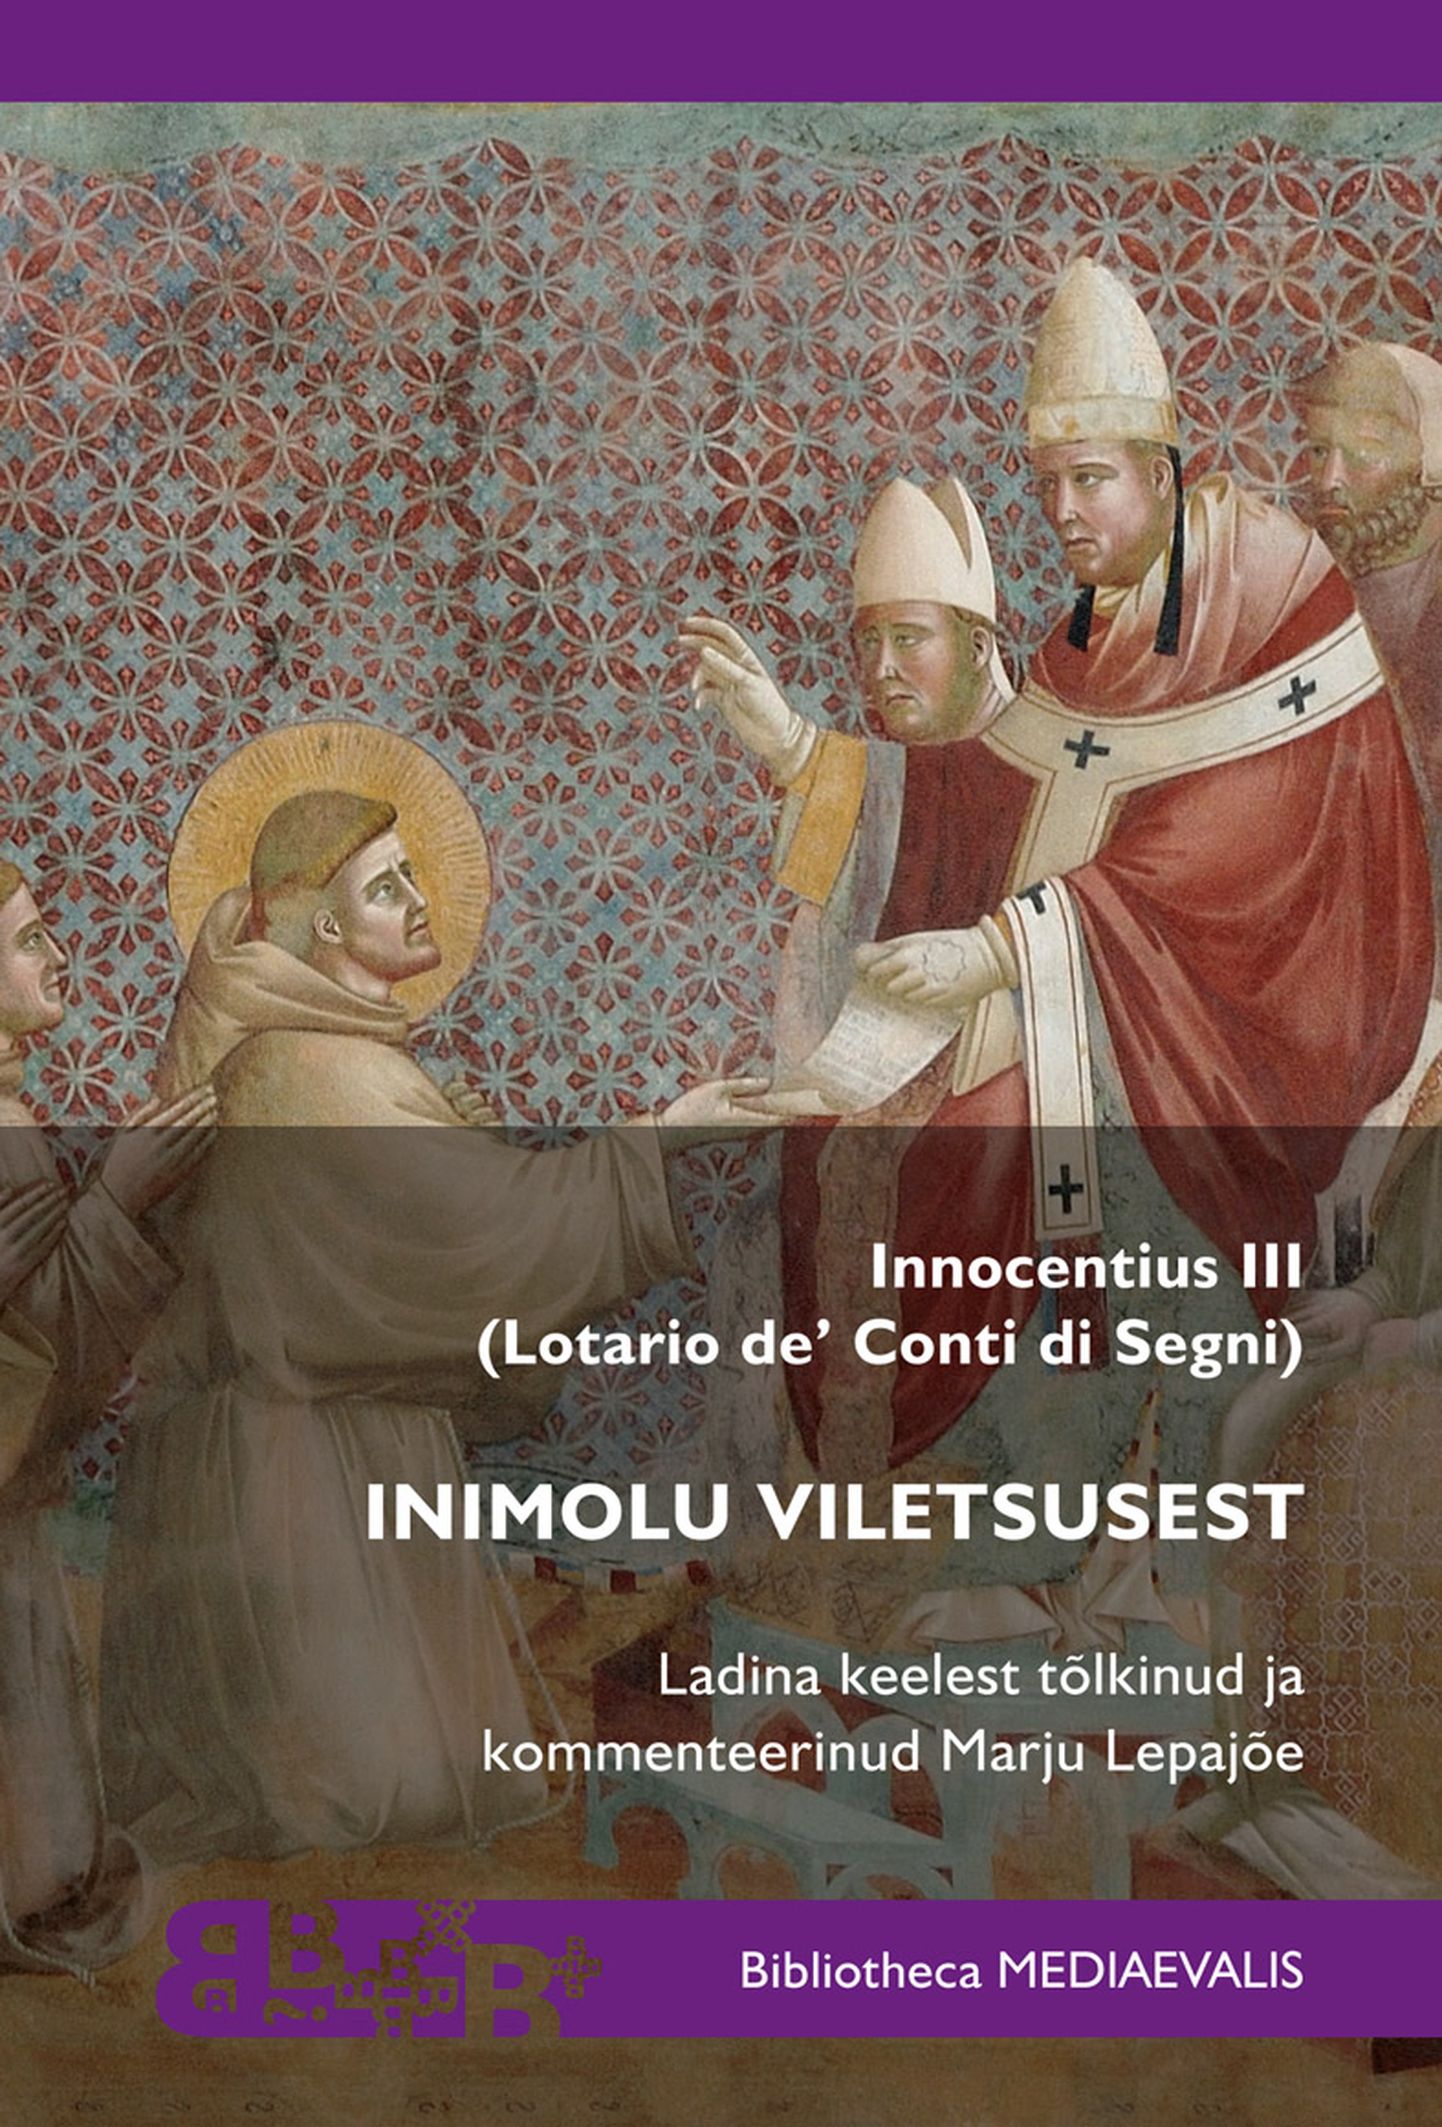 Innocentius III: Inimolu viletsusest